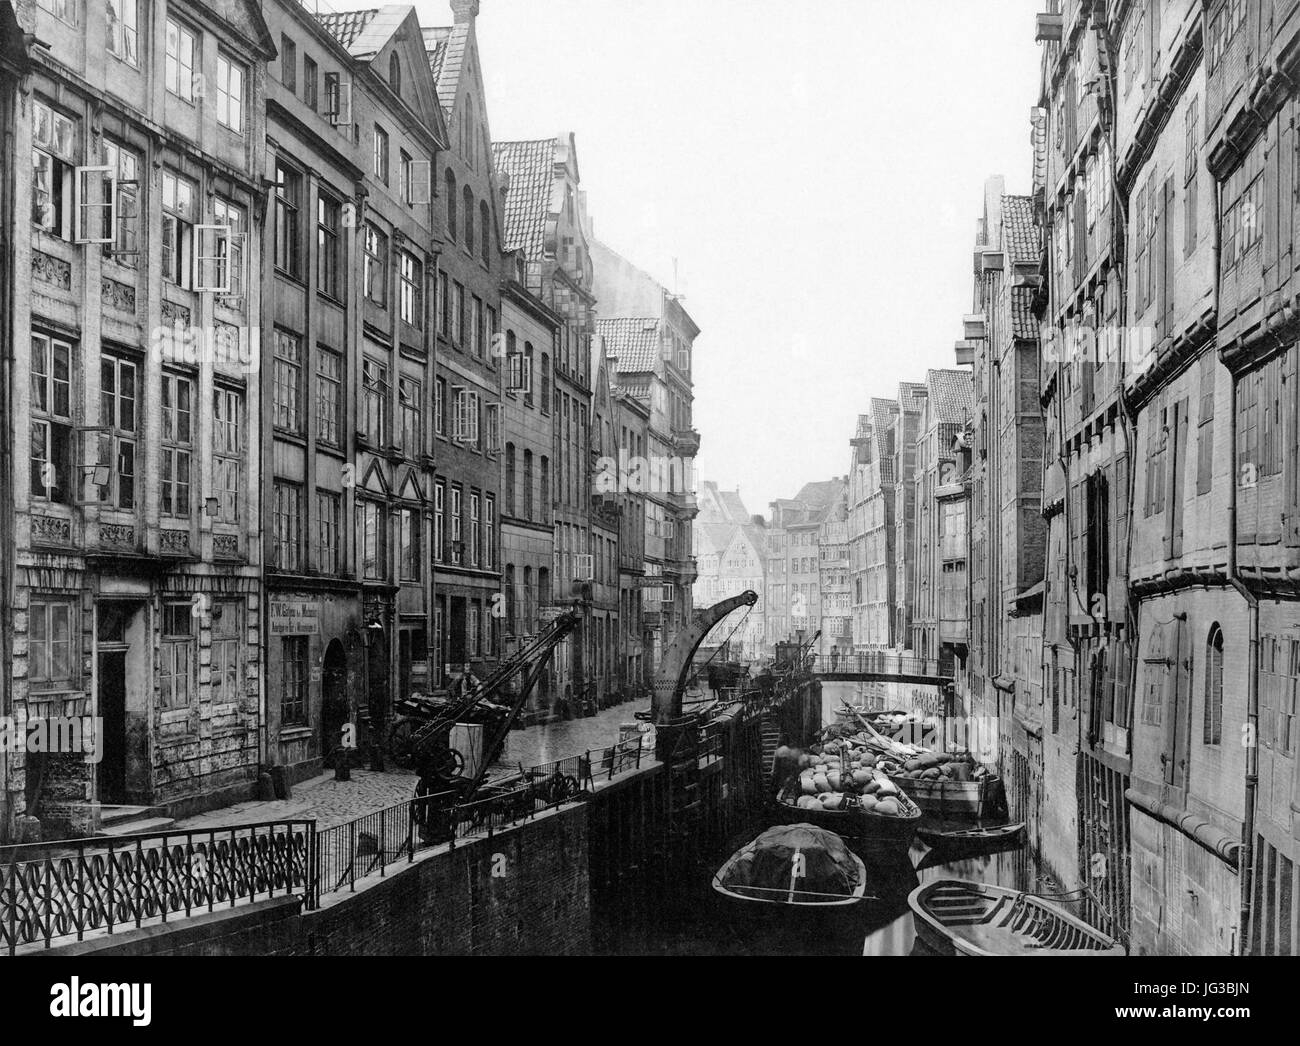 Hamburg.1883.Holländische Reihe.Vdz-16-300dpi Stock Photo